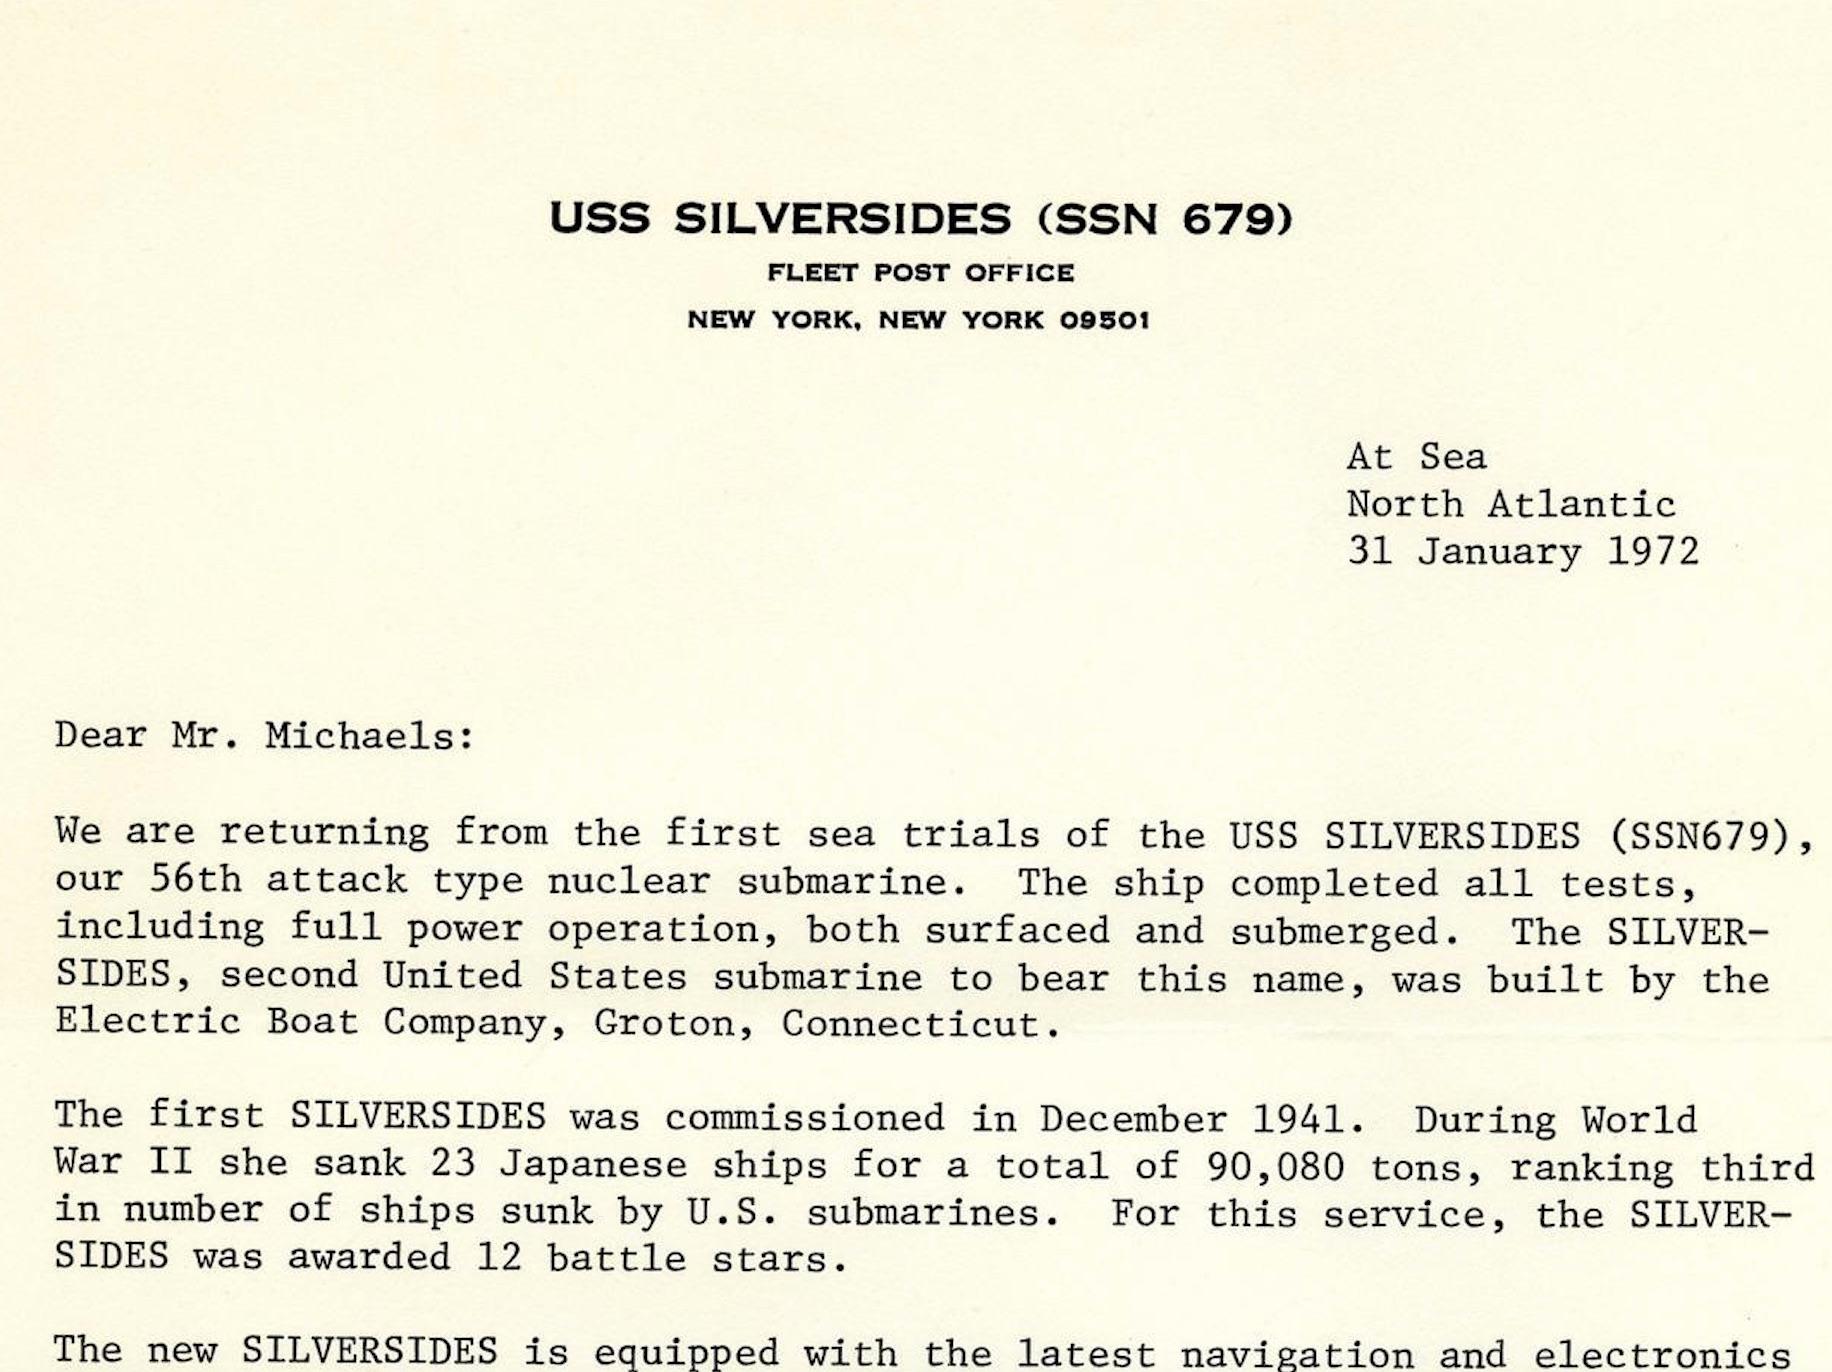 Nous présentons une lettre originale dactylographiée et signée du vice-amiral Rickover à Robert L. Michaels, datée du 31 janvier 1972, concernant les capacités des sous-marins à propulsion nucléaire américains. 

Dans cette lettre intéressante, le